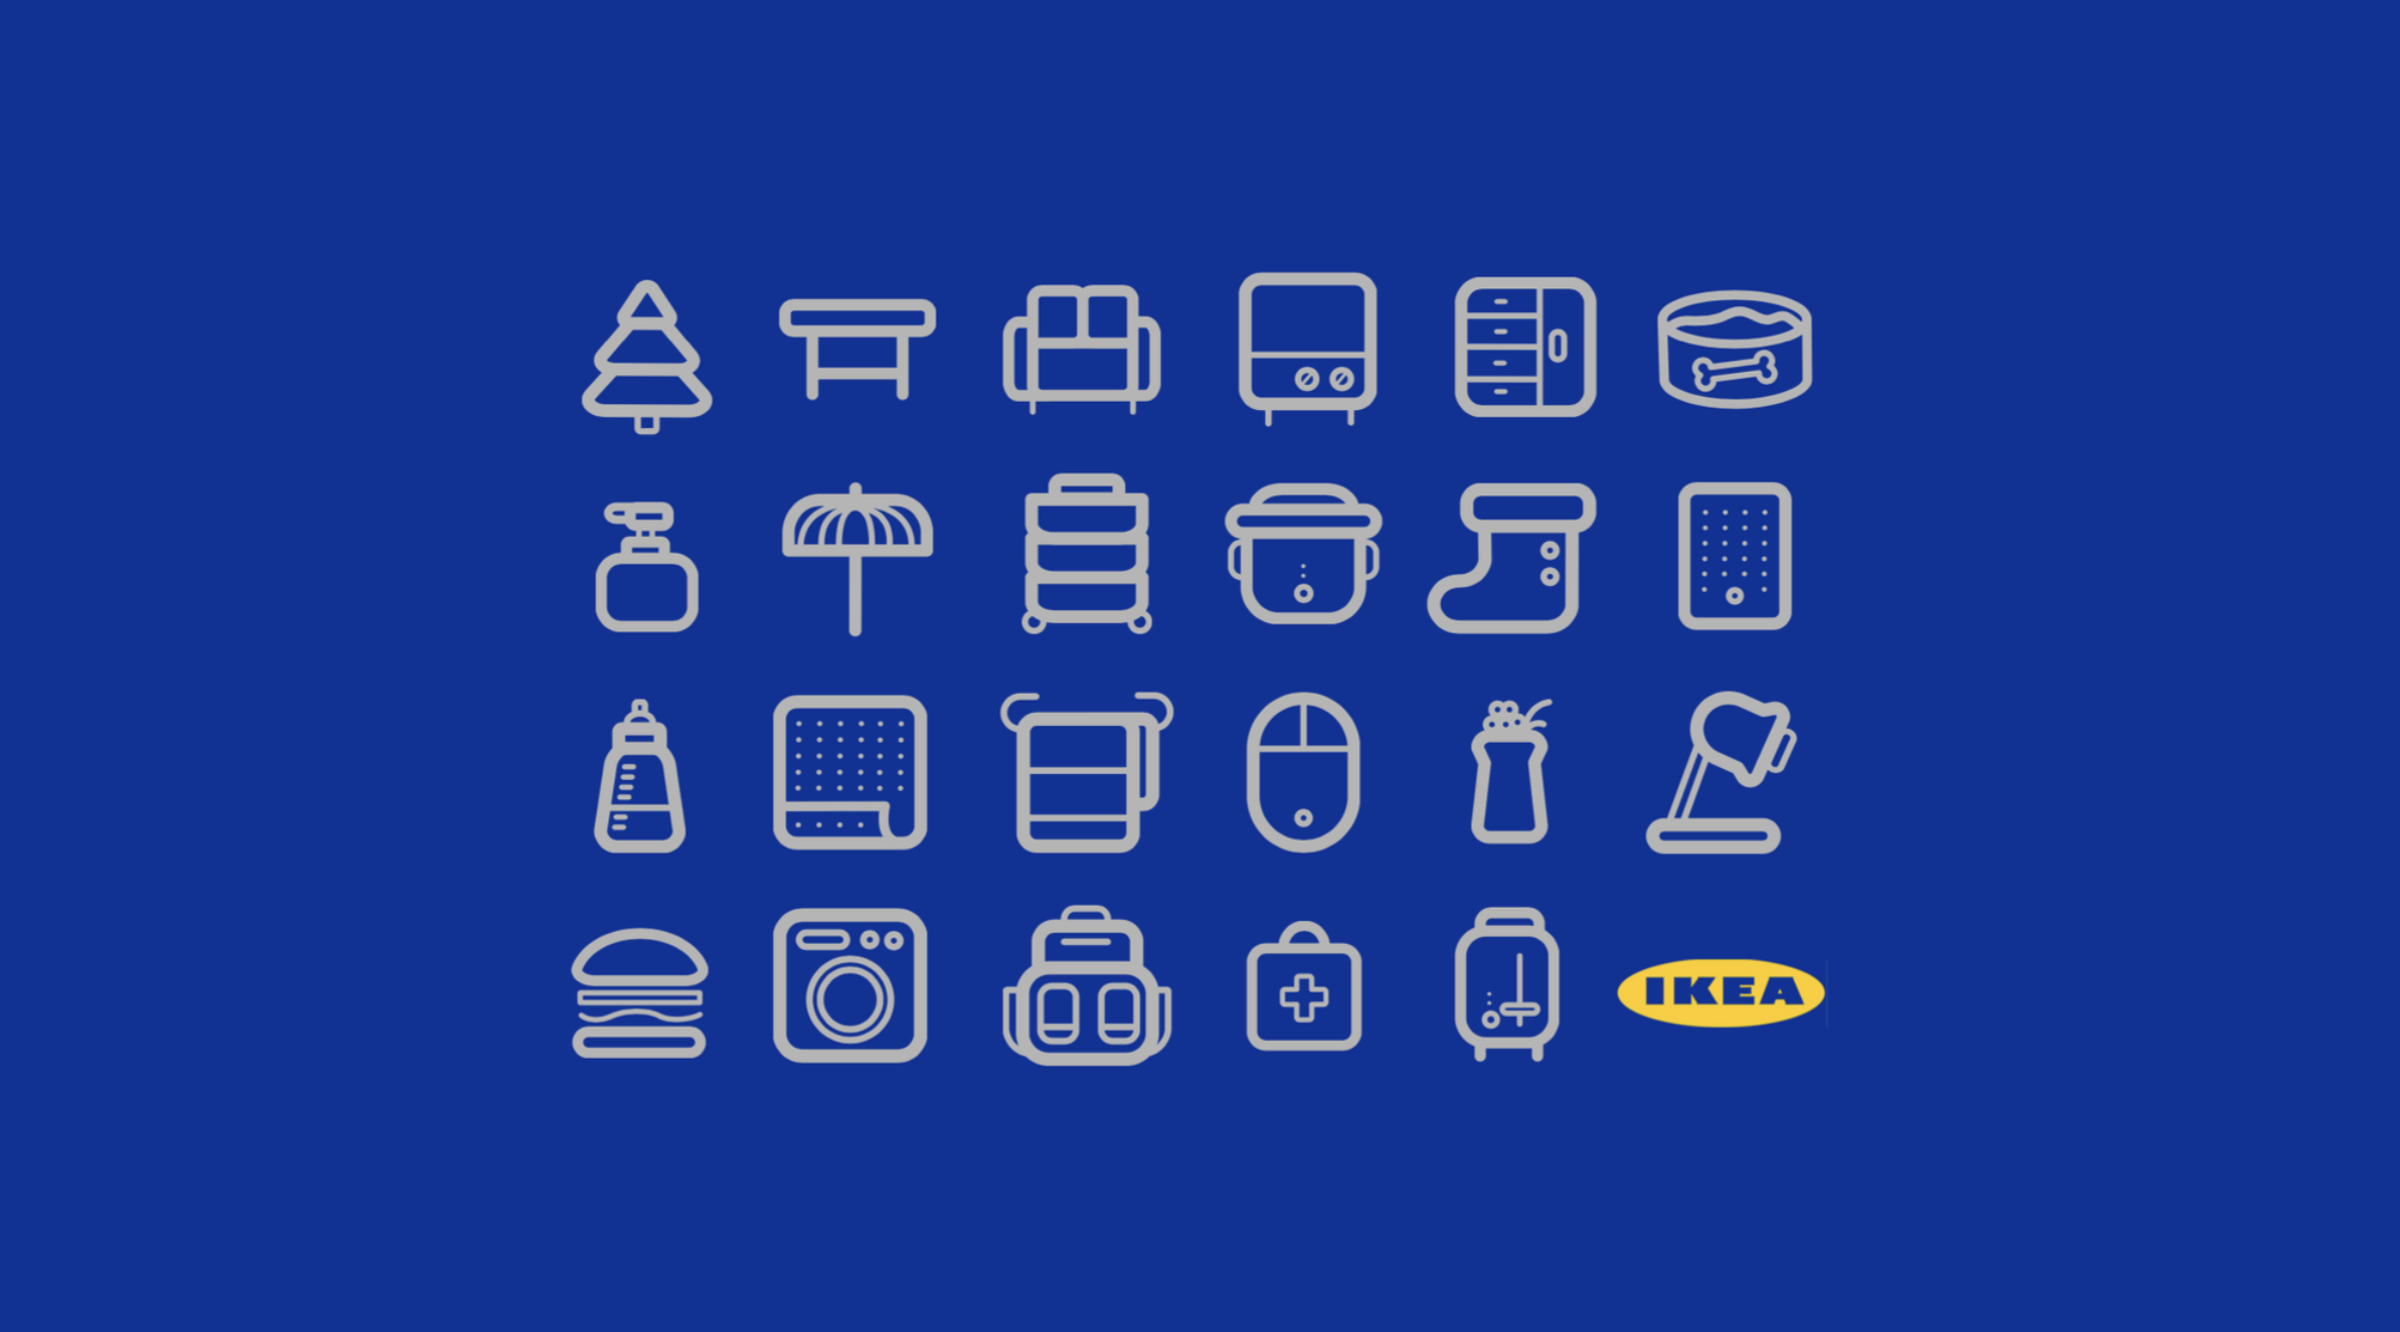 IKEA Logo Design